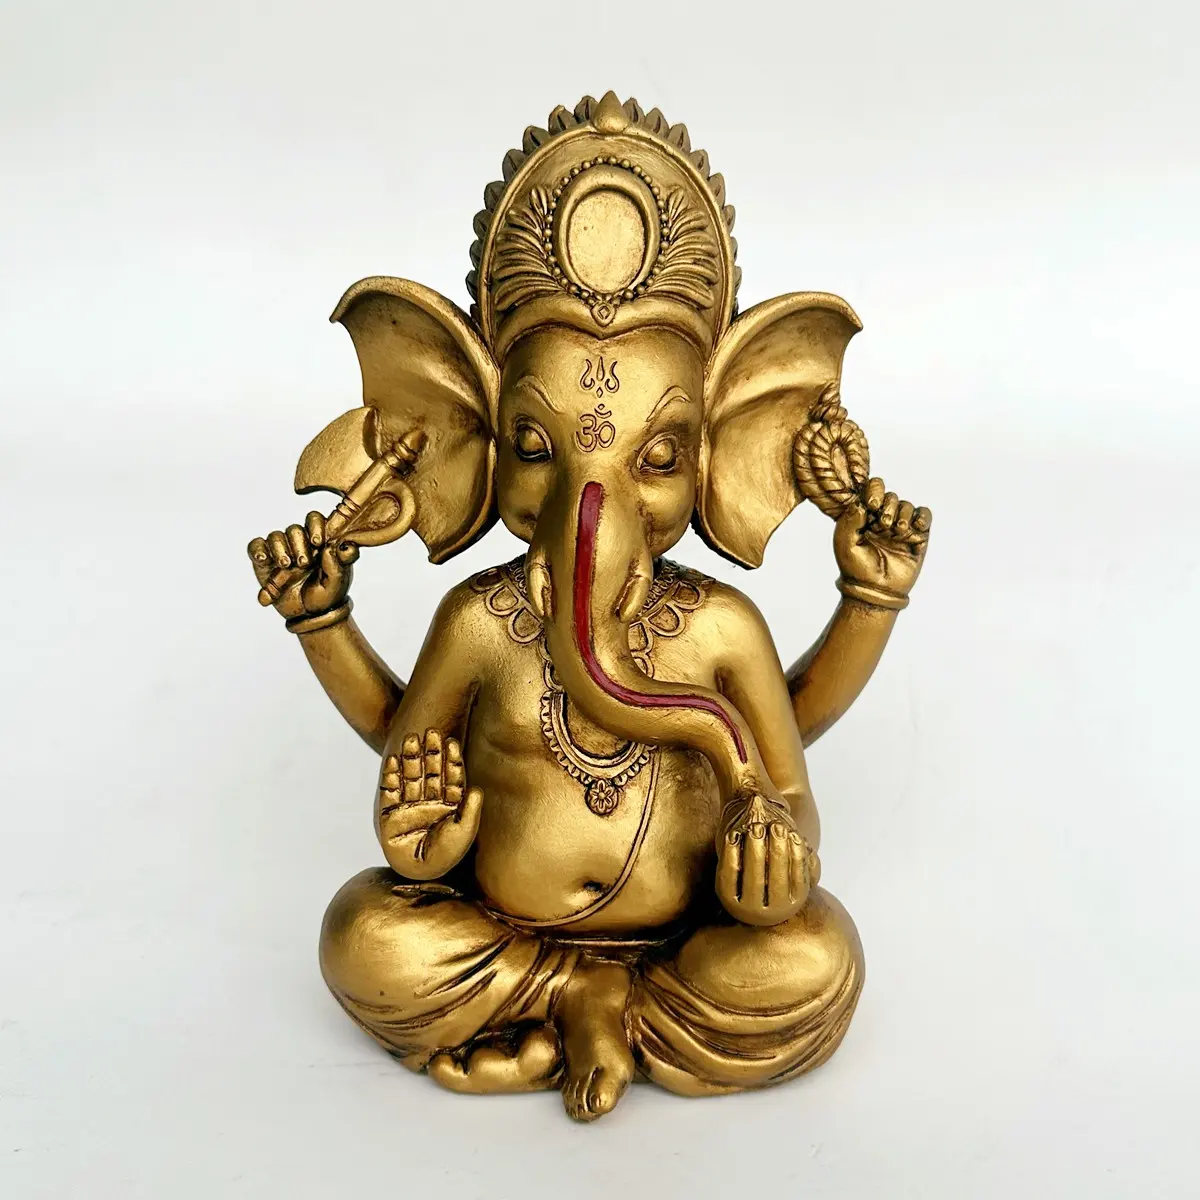 Статуя Ганеши, слон, Будда, сидящий Господь, благословение, домашний декор, индуистский Бог, коллекционные старинные бронзовые изделия из полирезина